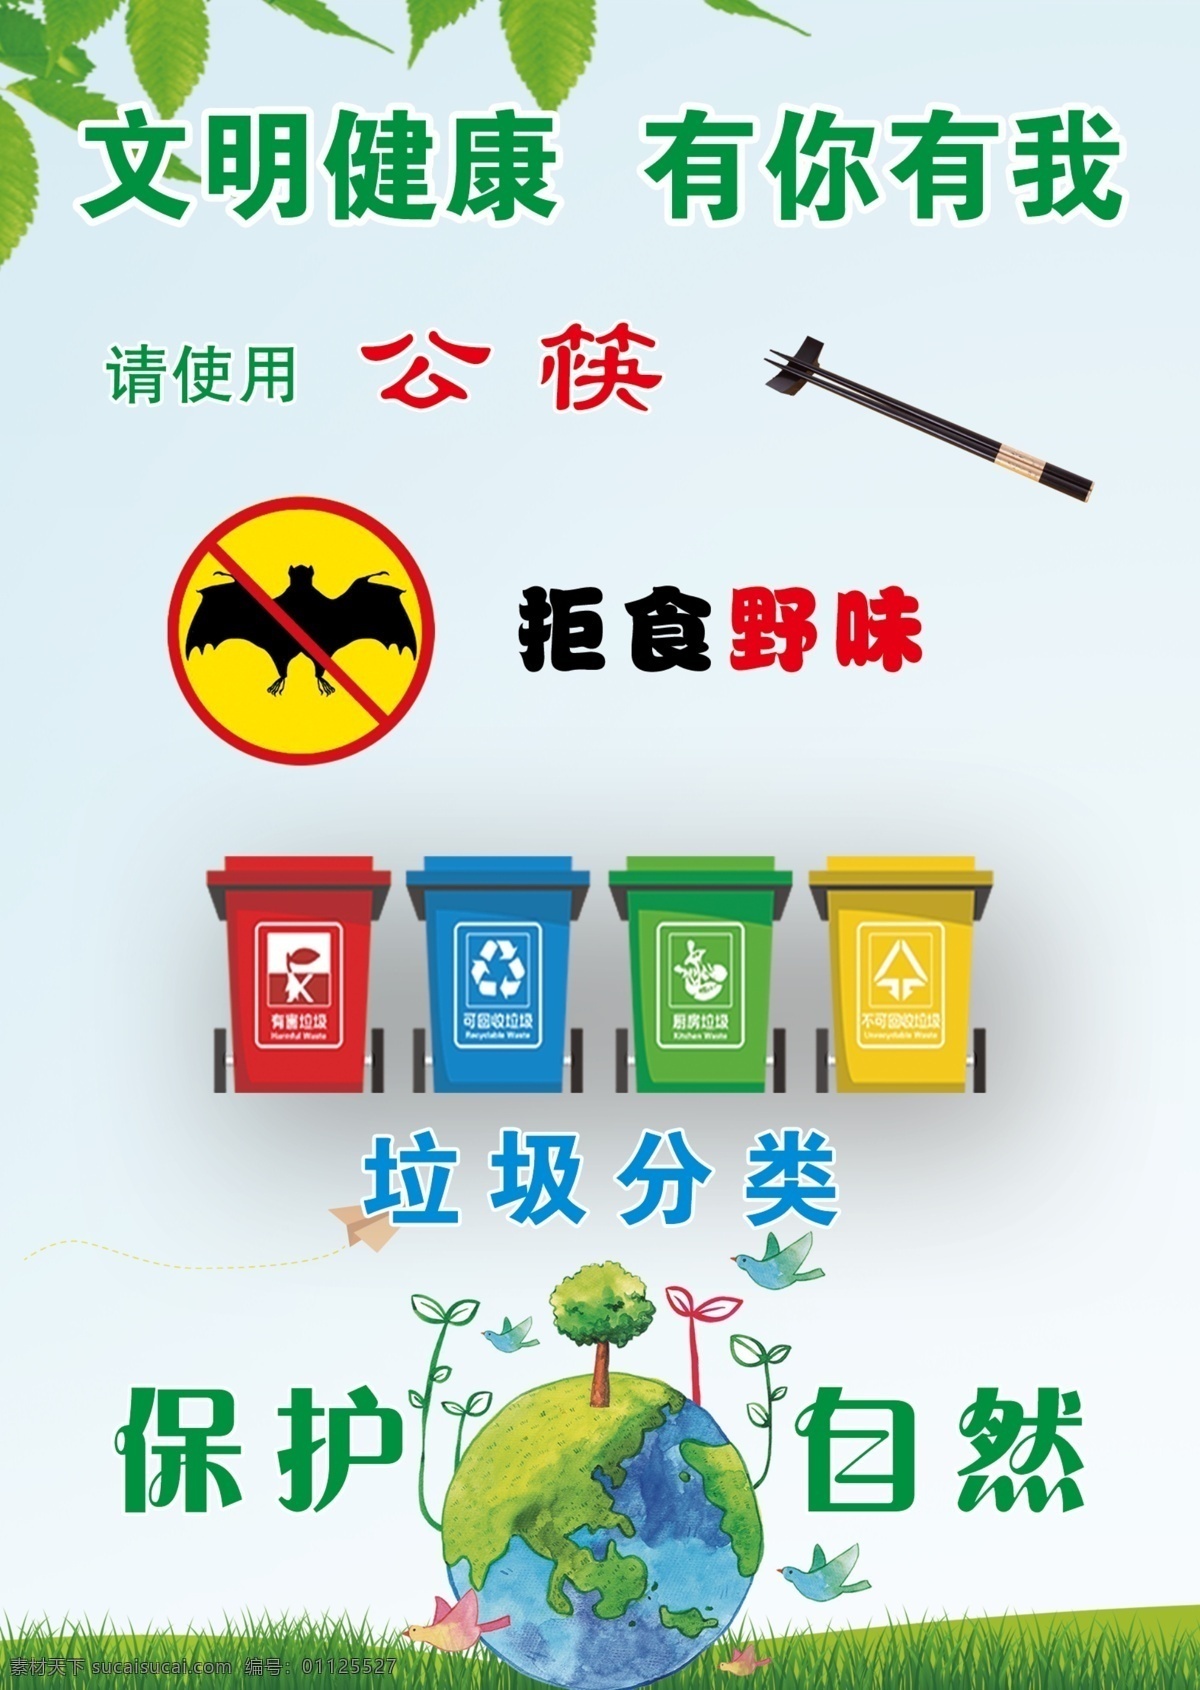 公筷图片 温馨提示 提示牌 疫情 文明健康 垃圾分类 拒食野味 保护自然 展板 广告 海报